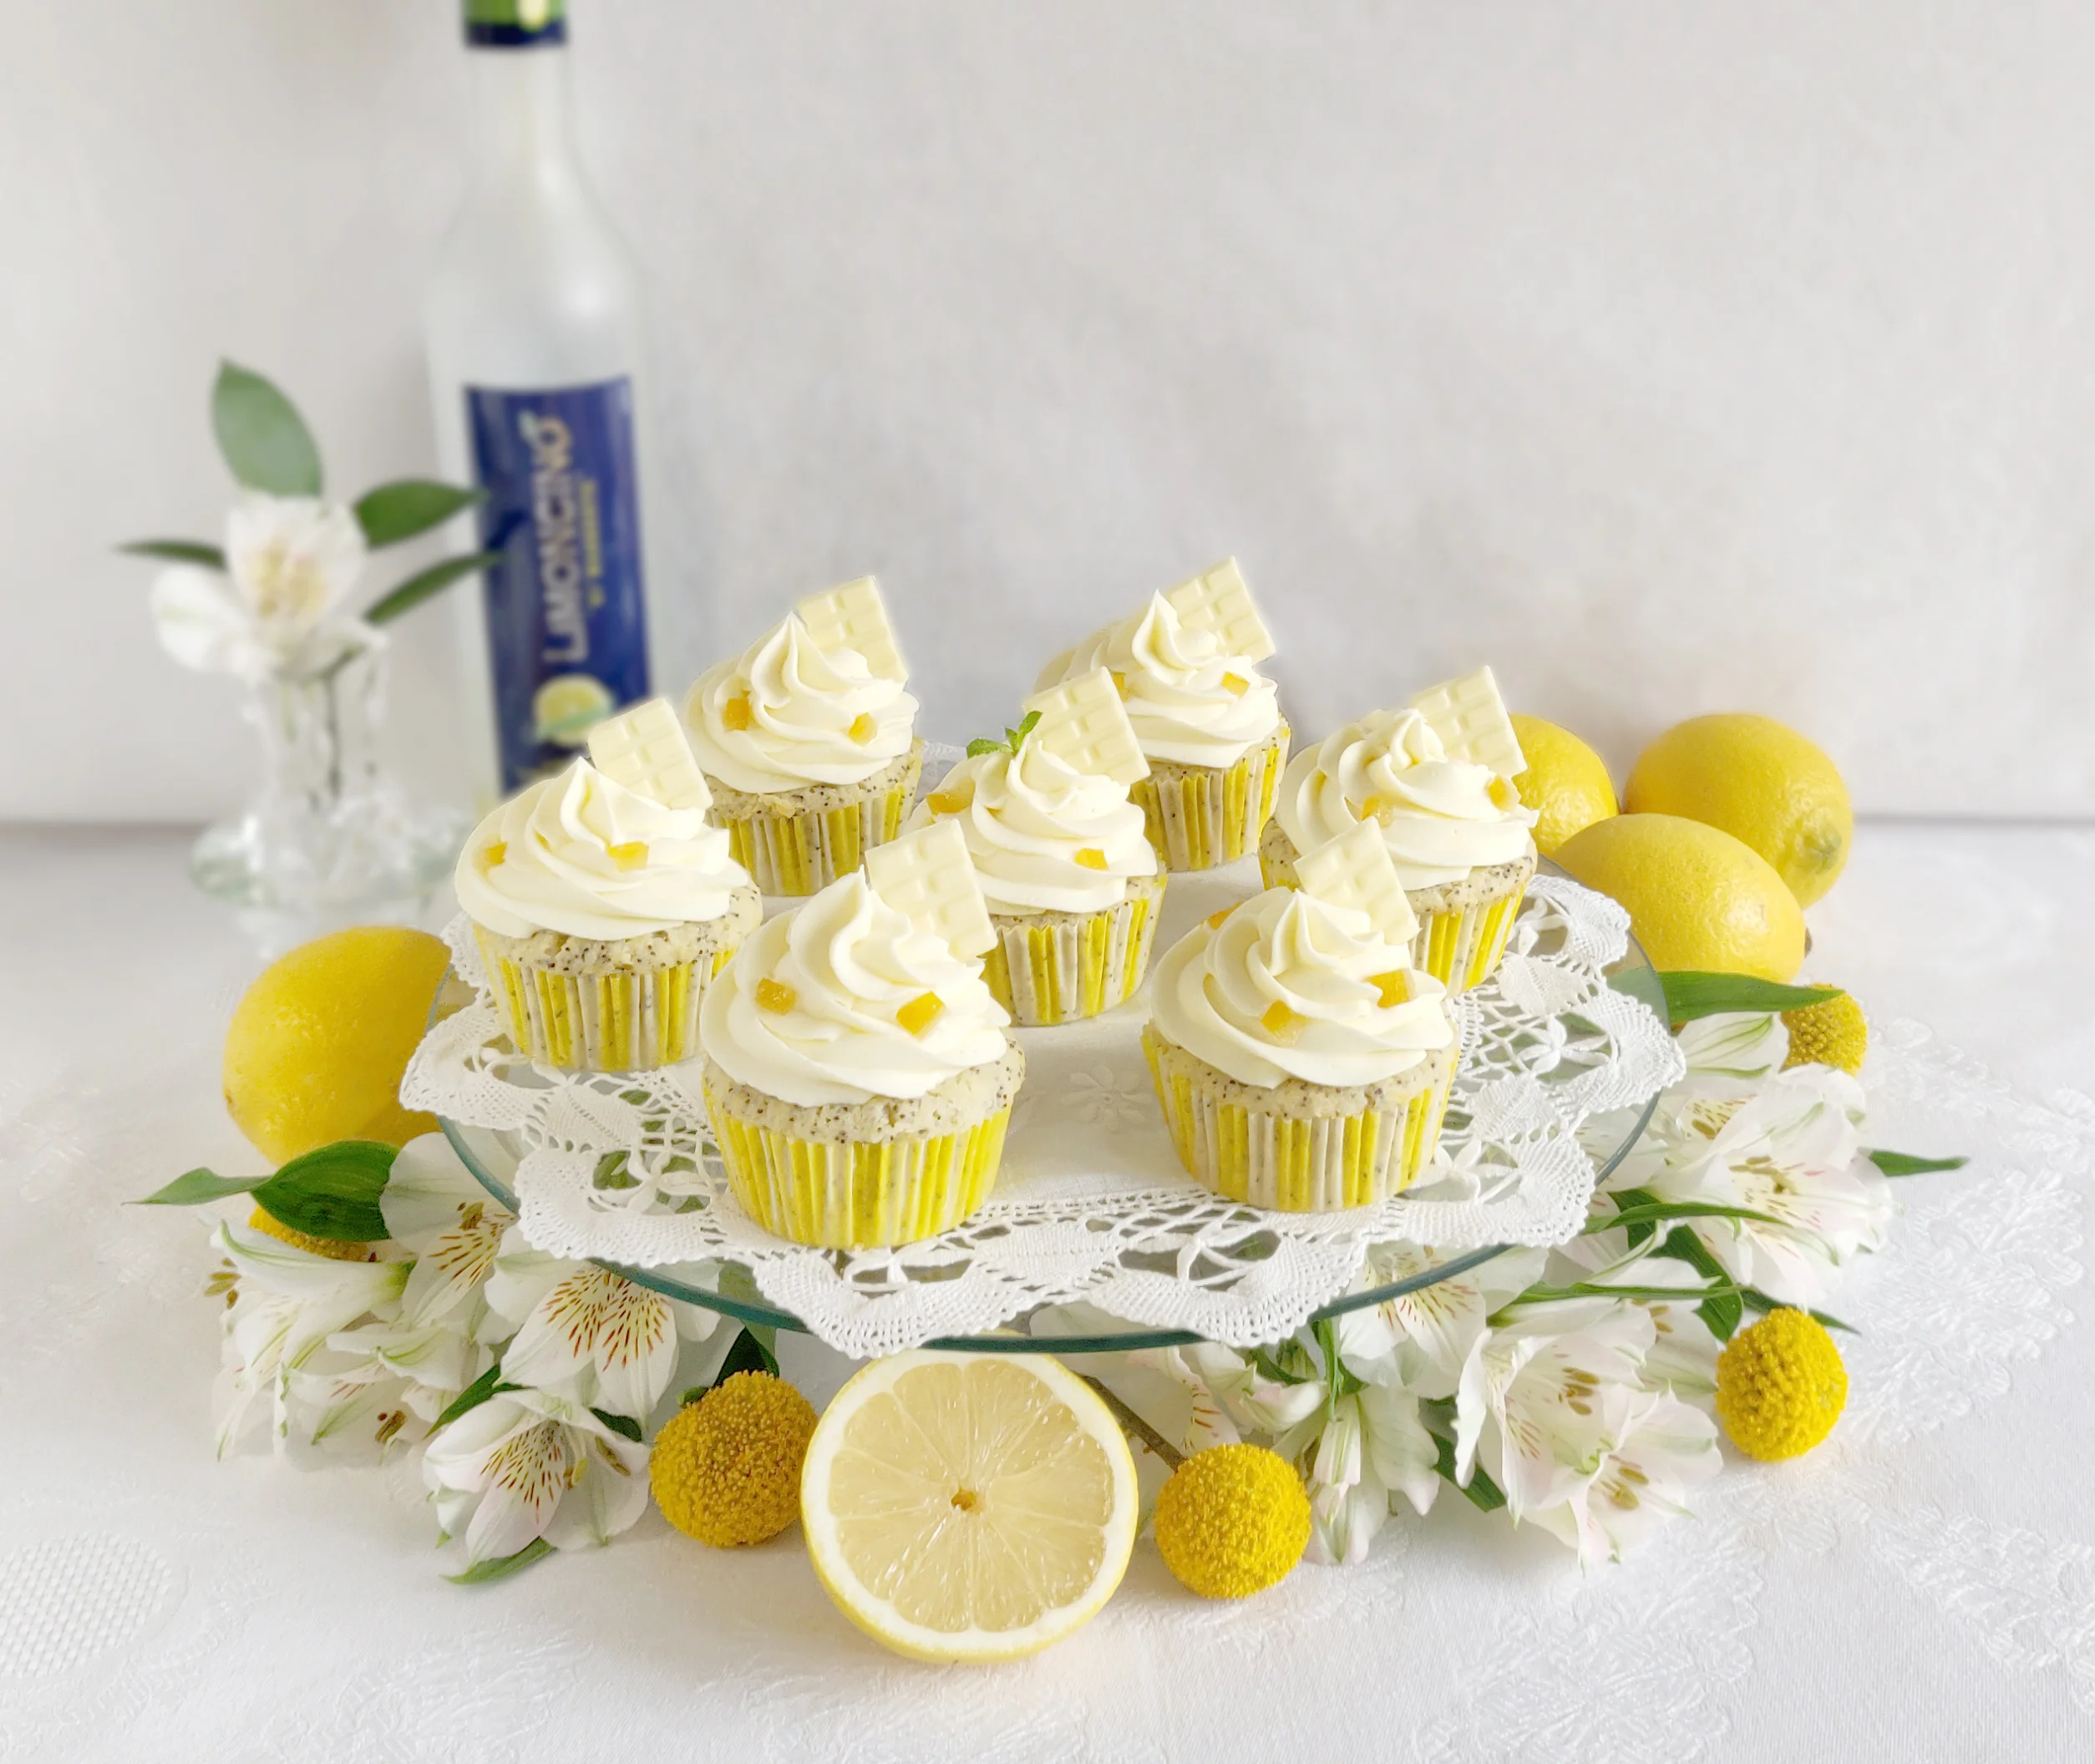 /assets/images/recipes/cupcakes-limon-jengibre/1.webp